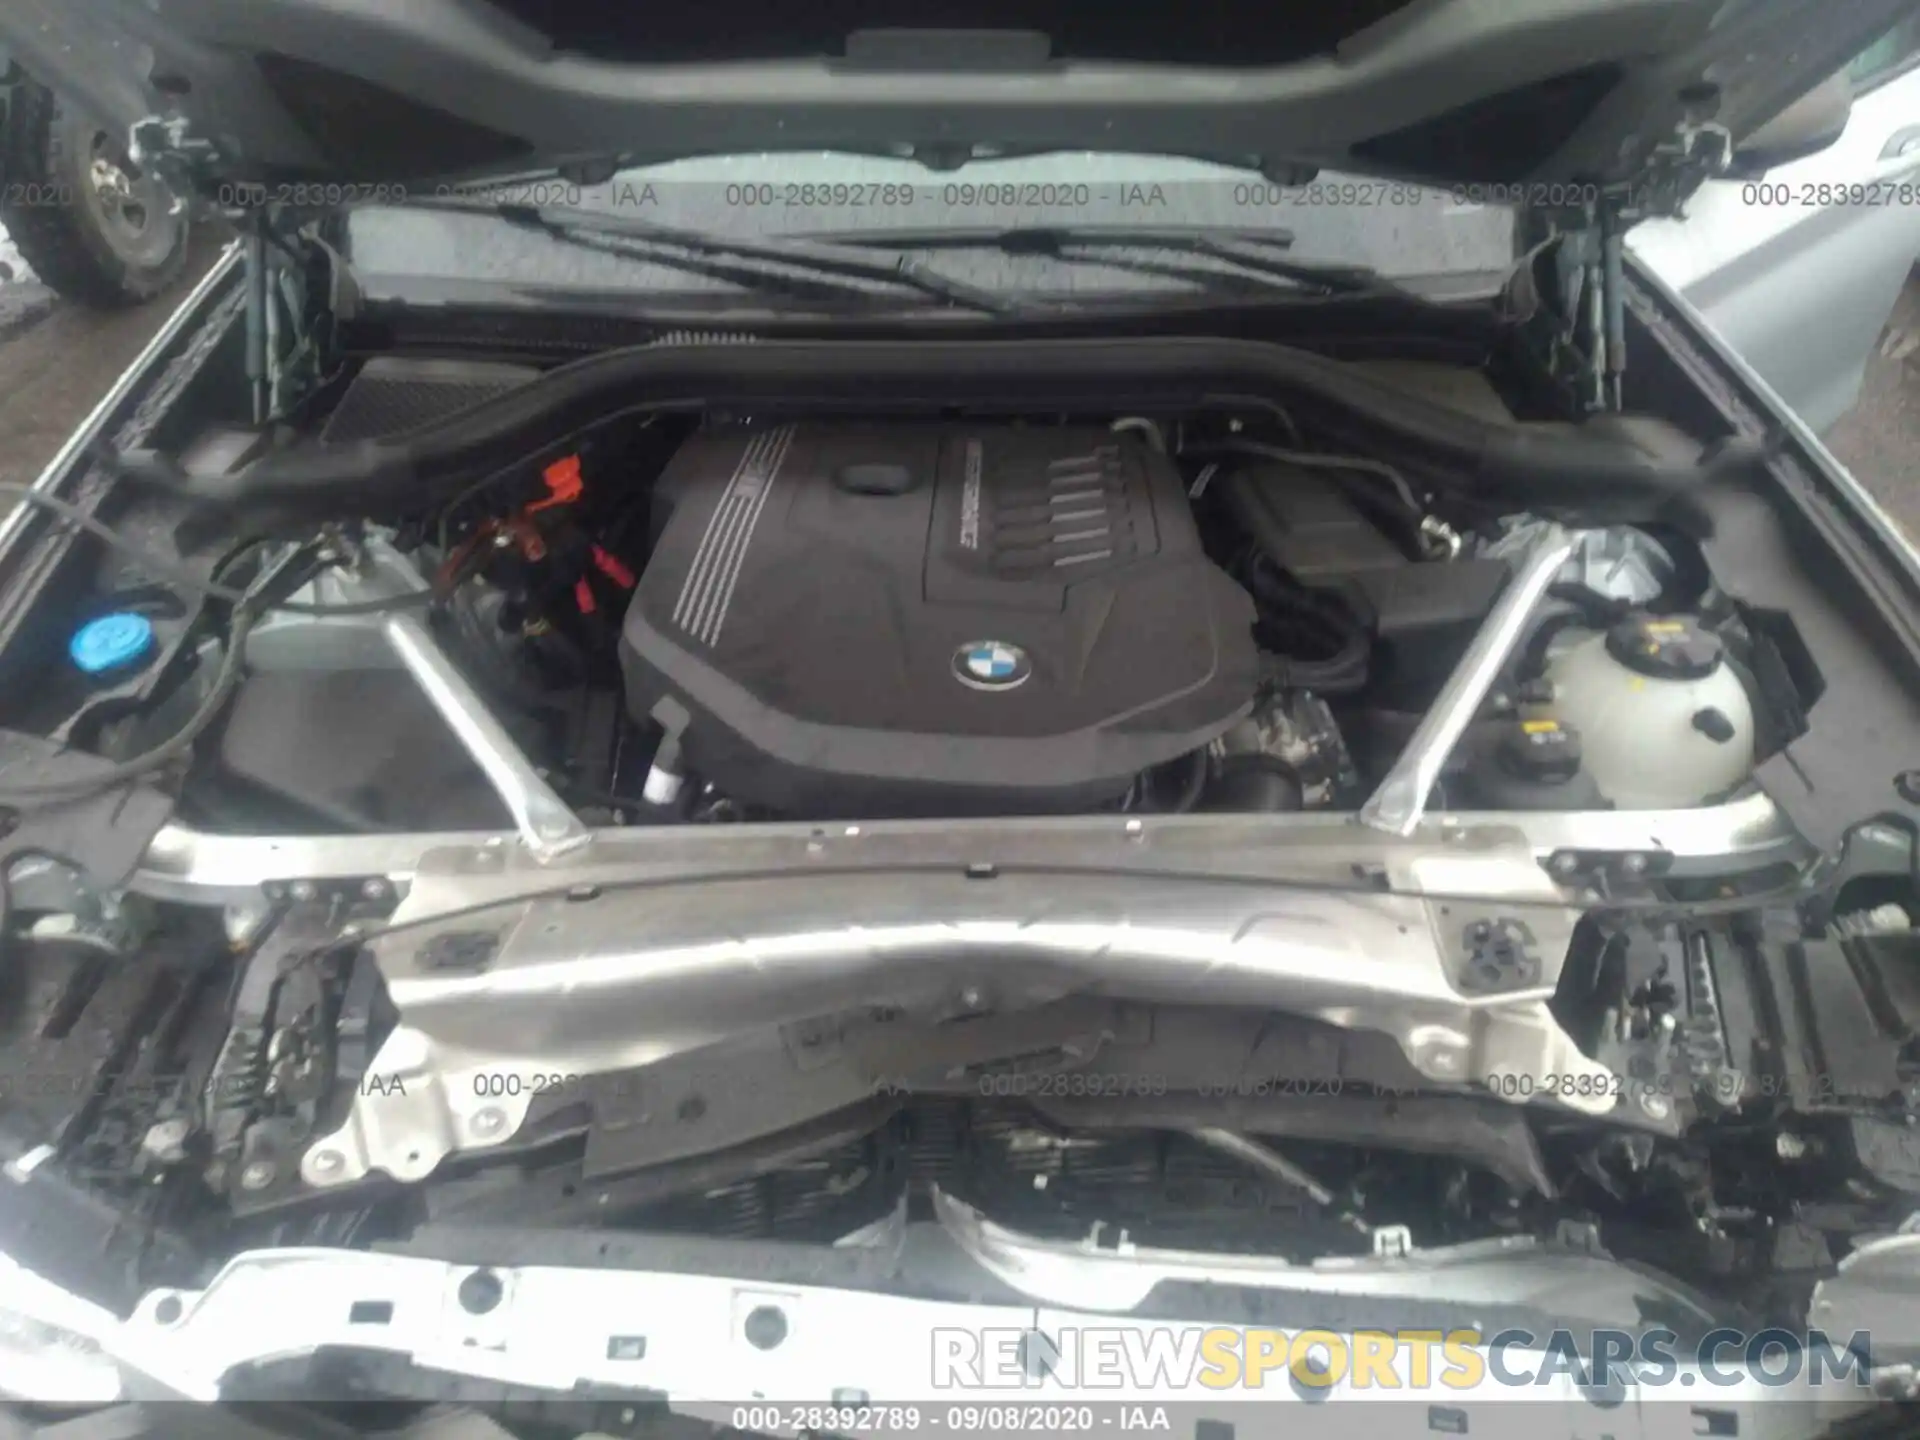 10 Photograph of a damaged car 5UXTY9C09LL304208 BMW X3 2020